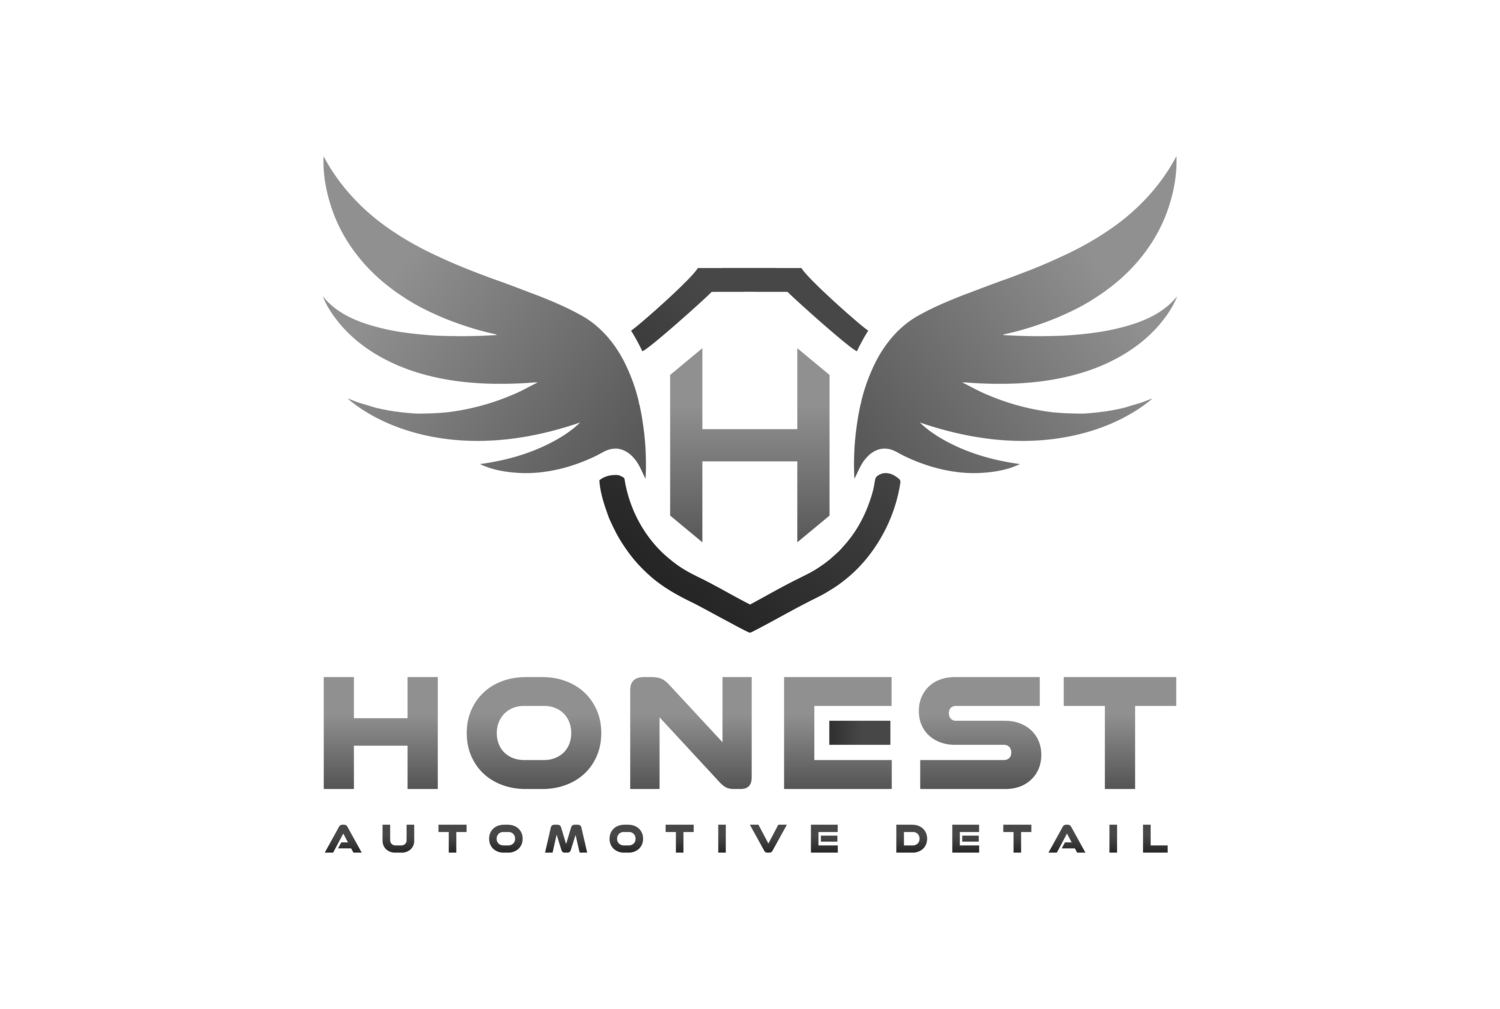 Honest Automotive Detail